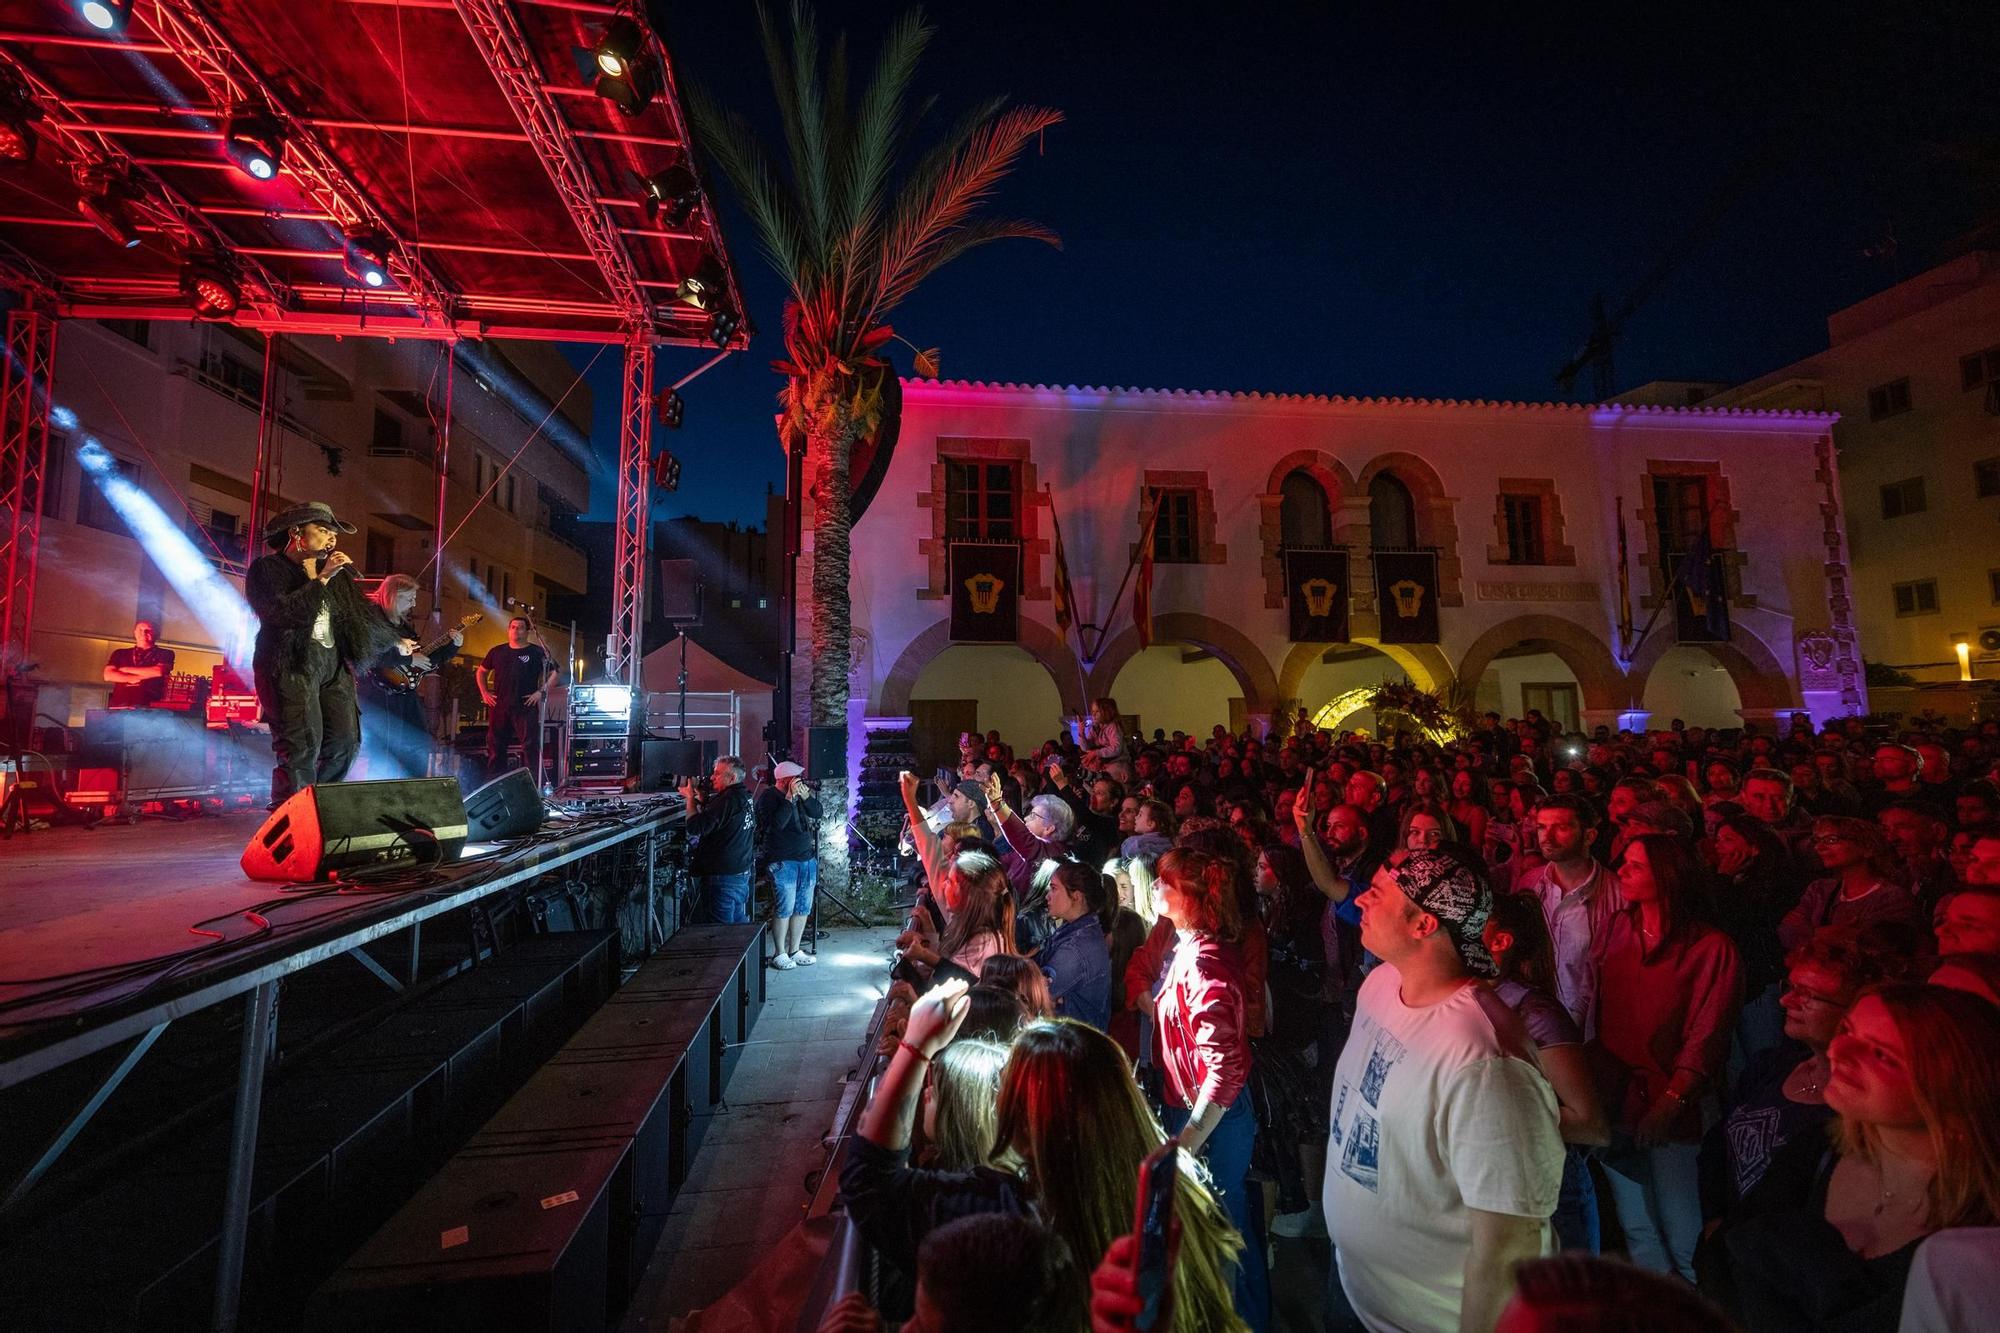 Galería: Mira aquí todas las fotos del concierto de Chenoa en Ibiza